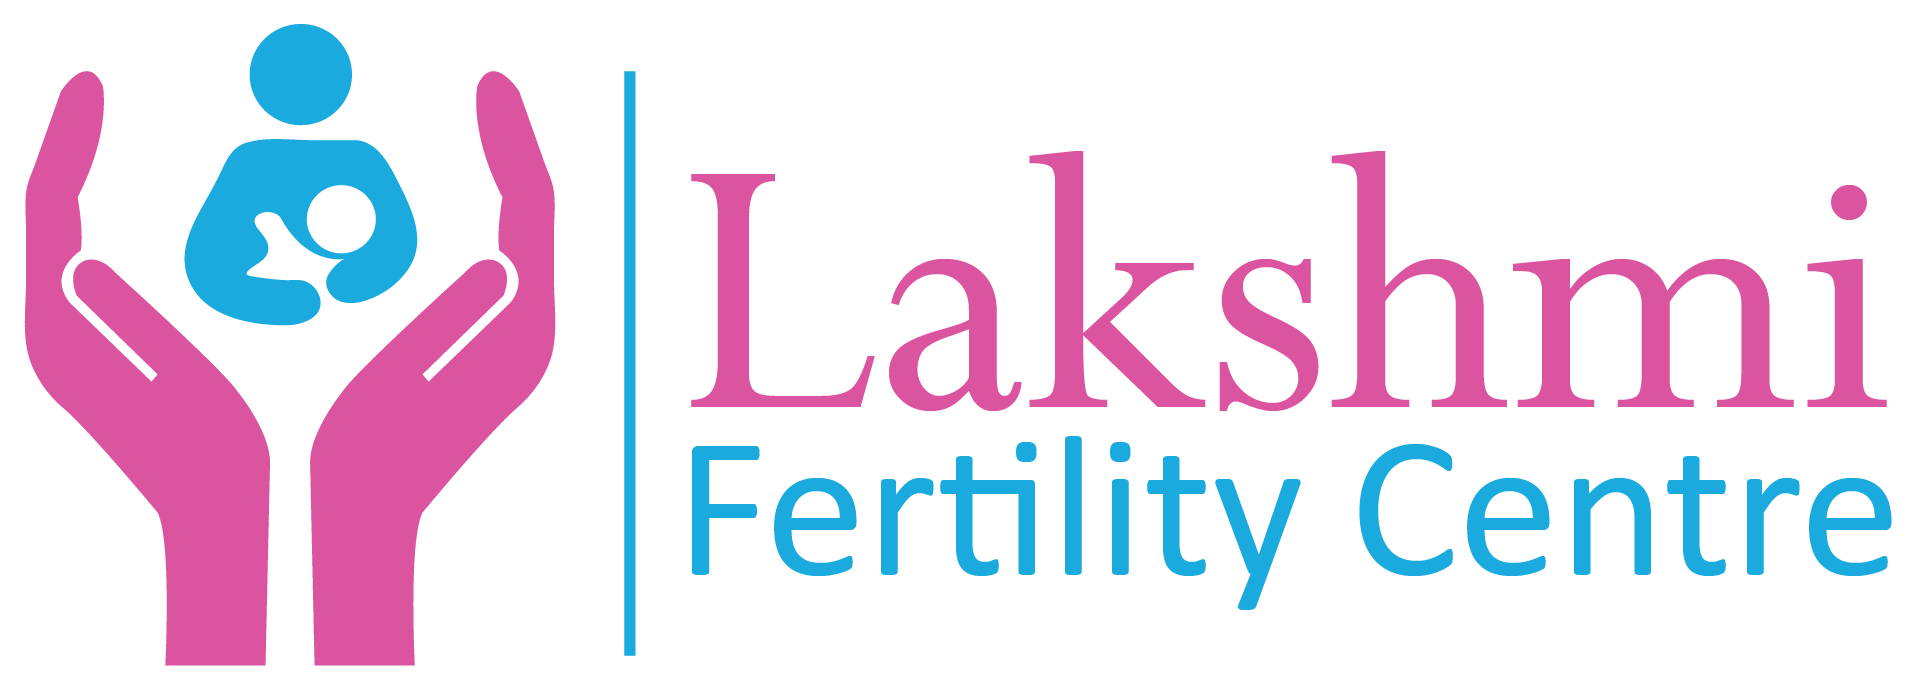 Infertility Logo Logodix 